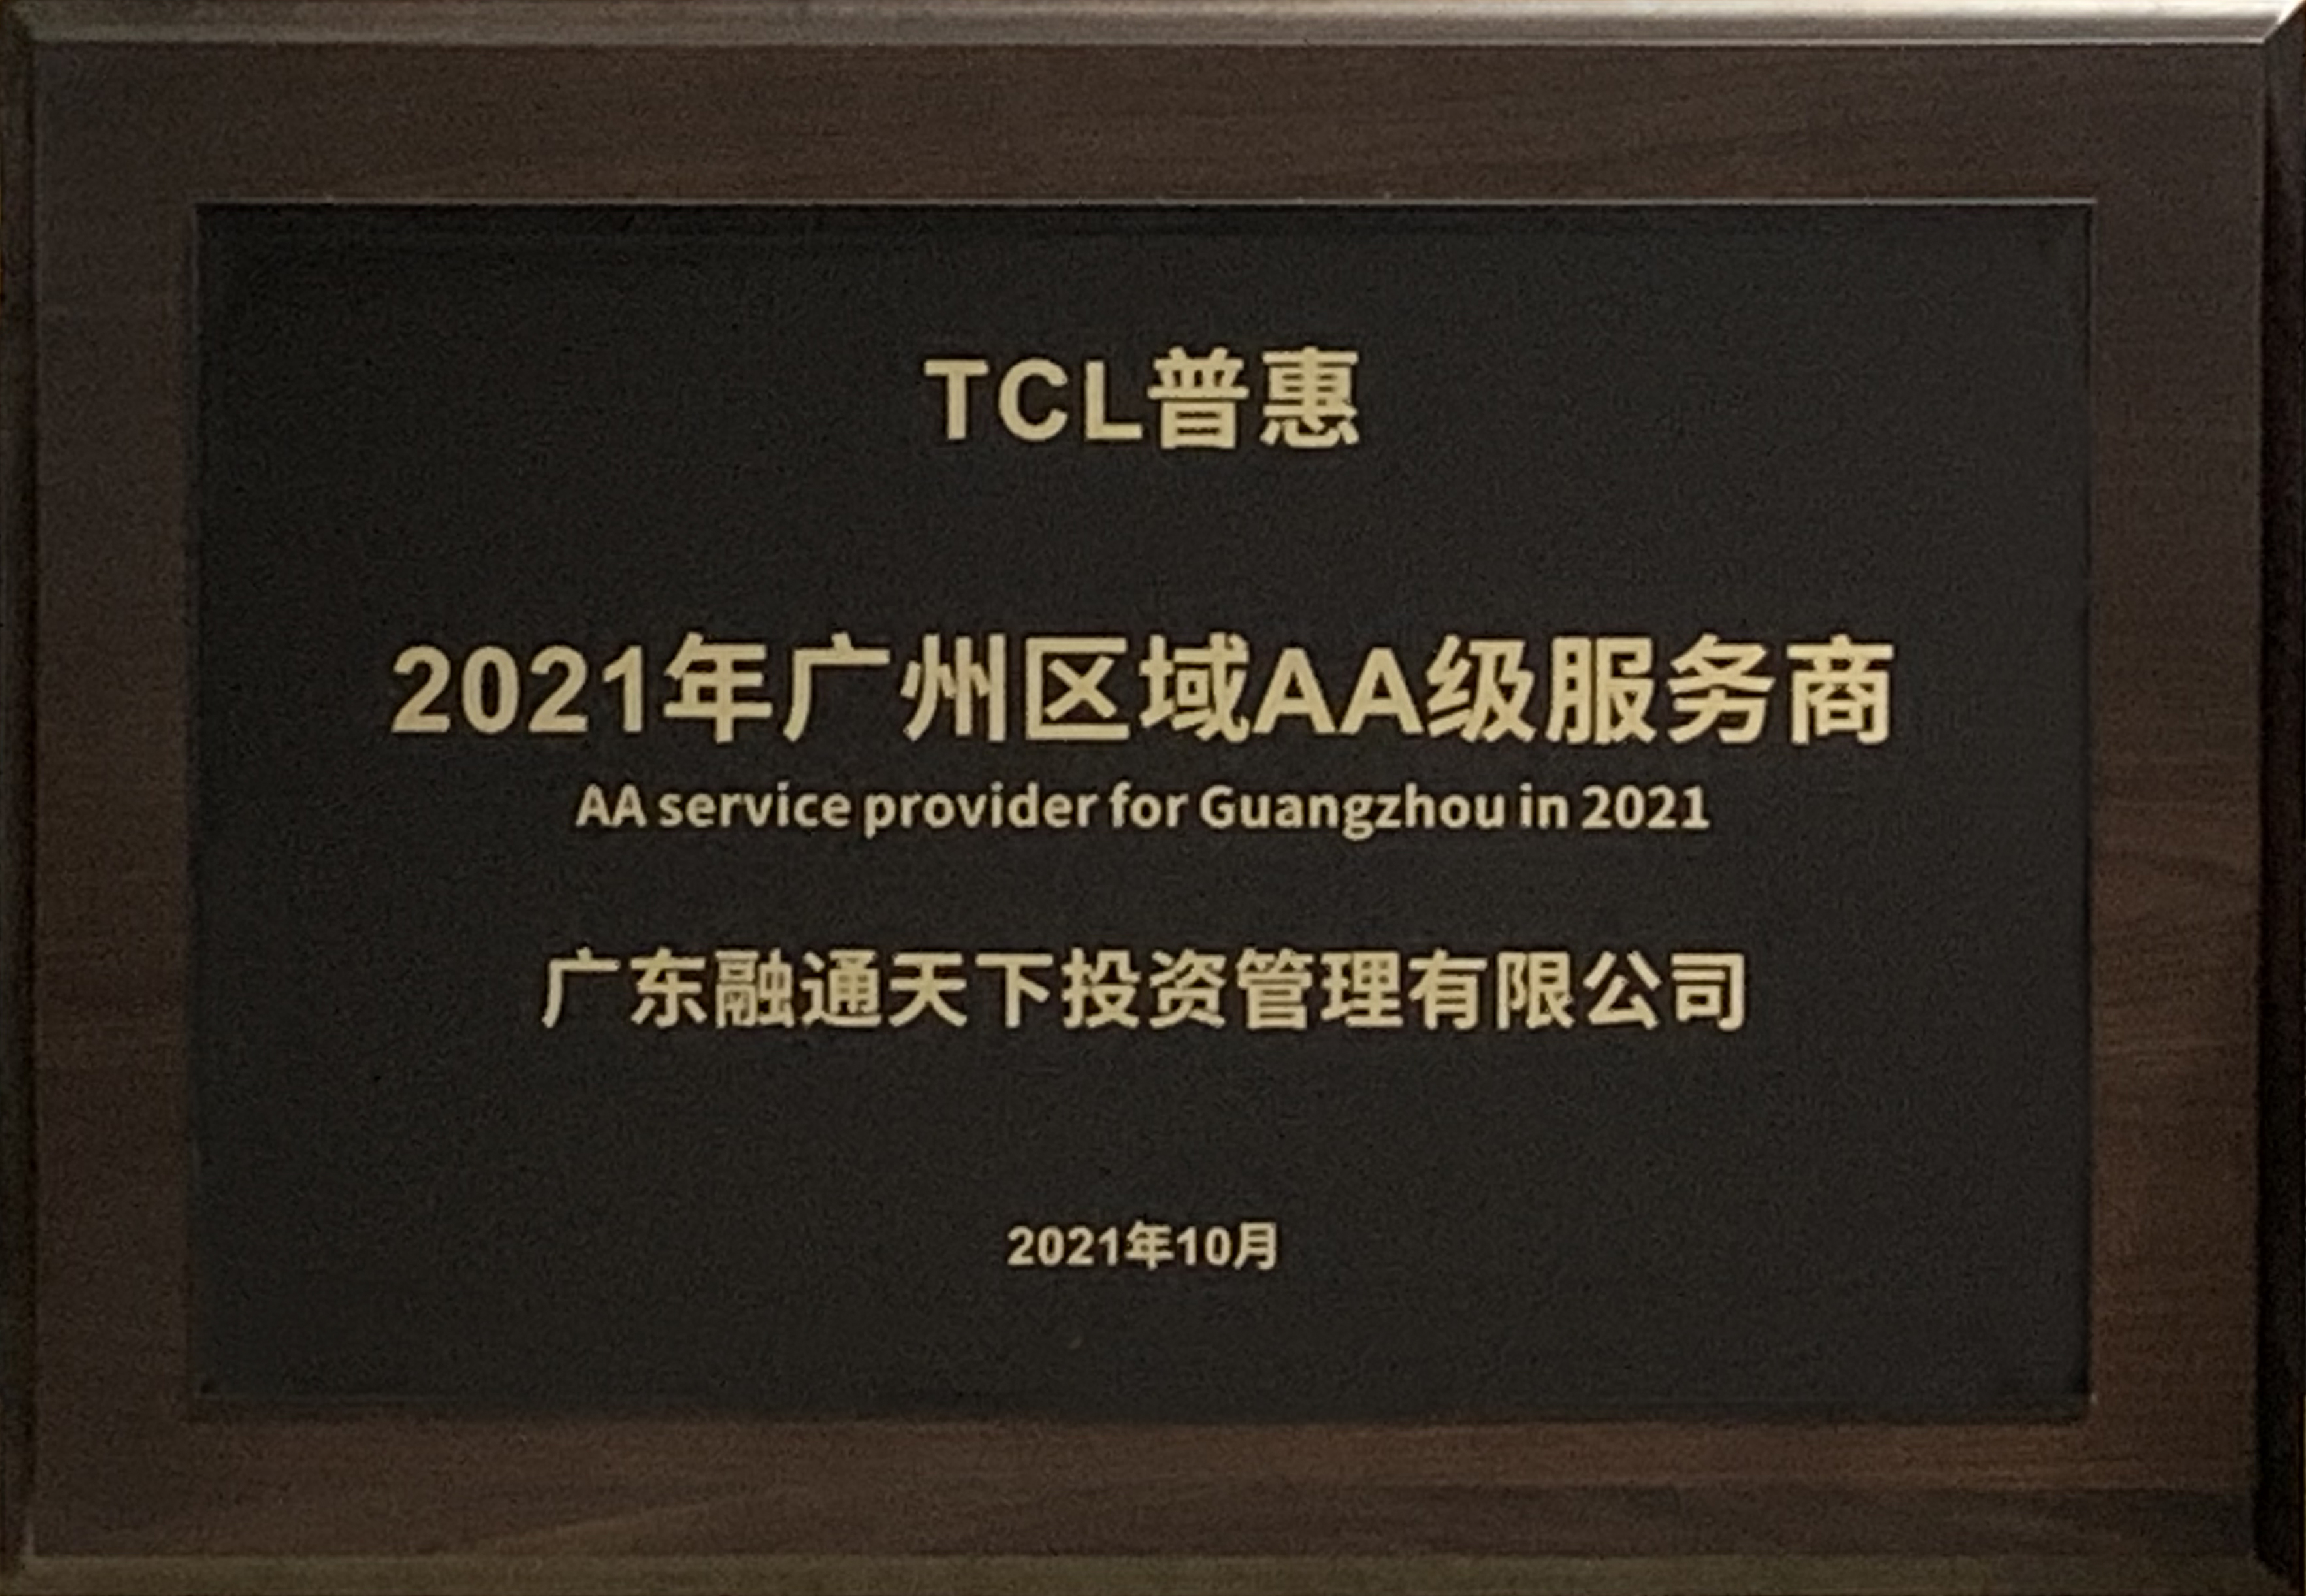 广东融通天下投资管理荣获TCL普惠“2021年广州区域AA级服务商”荣誉称号